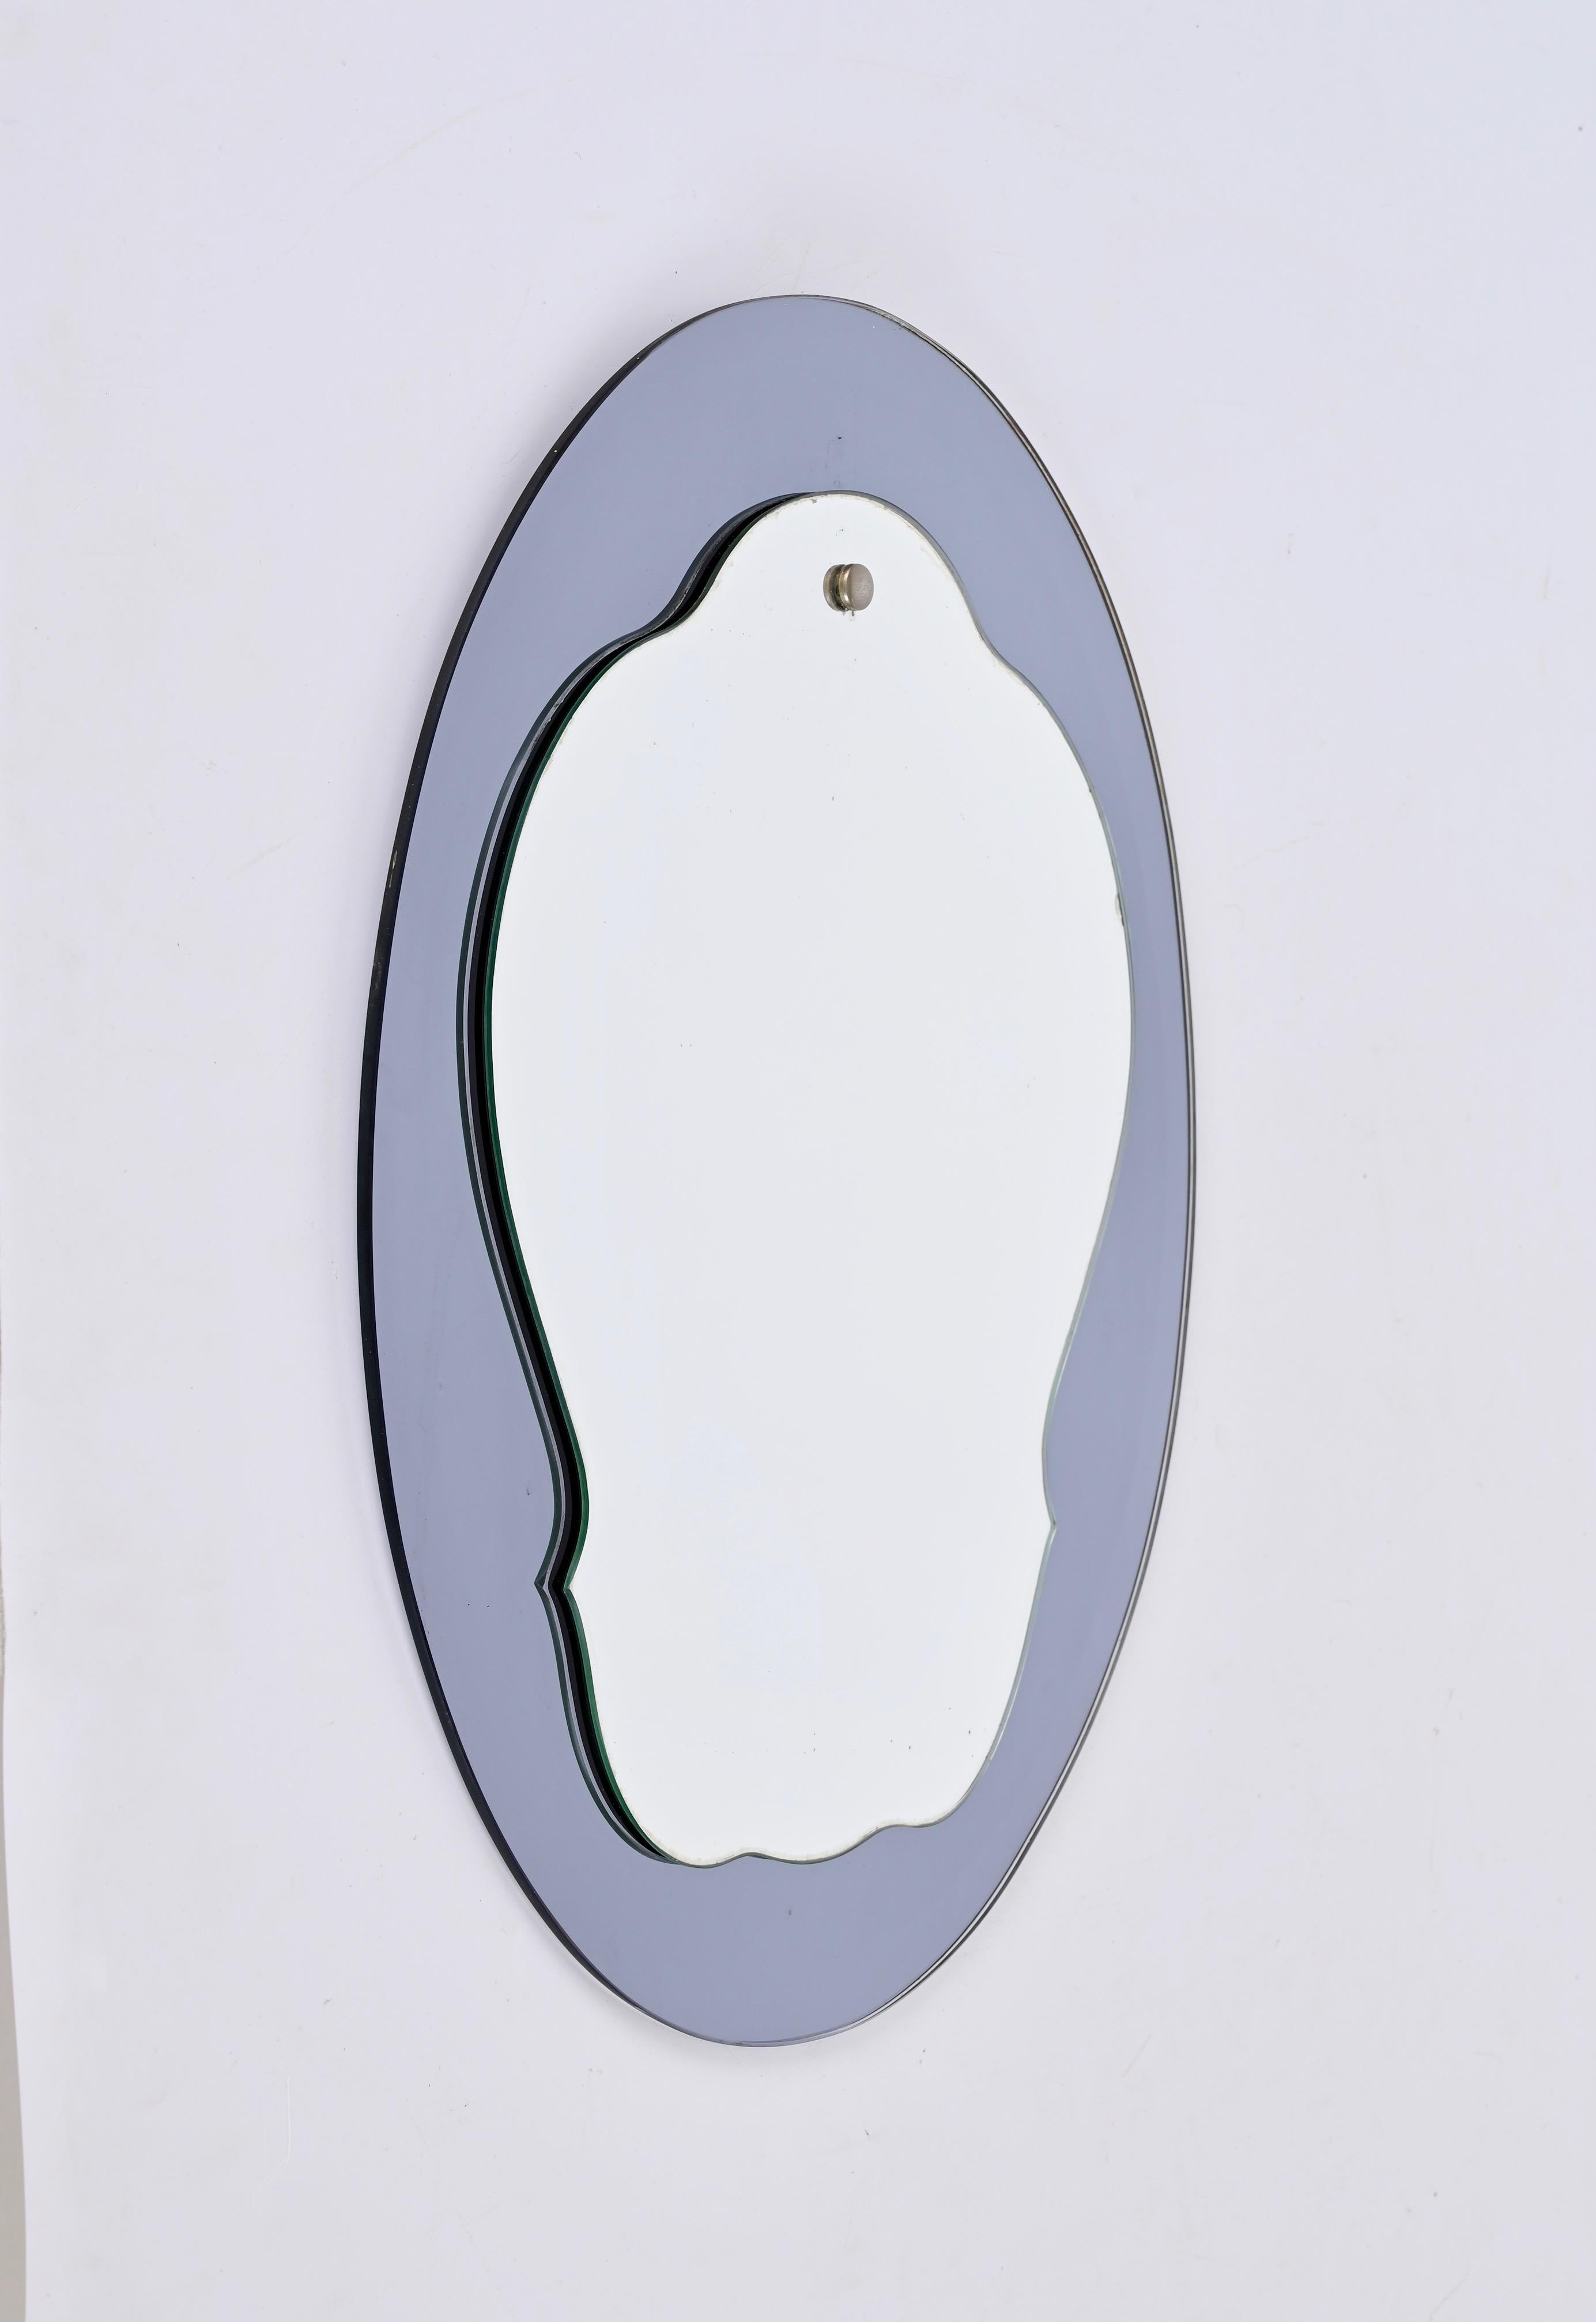 Atemberaubender ovaler doppelstöckiger Spiegel aus der Mitte des Jahrhunderts mit einem blau-grauen Glasrahmen. Cristal Arte hat dieses fantastische Stück wahrscheinlich in den 1960er Jahren in Italien entworfen.

Dank seines essentiellen und